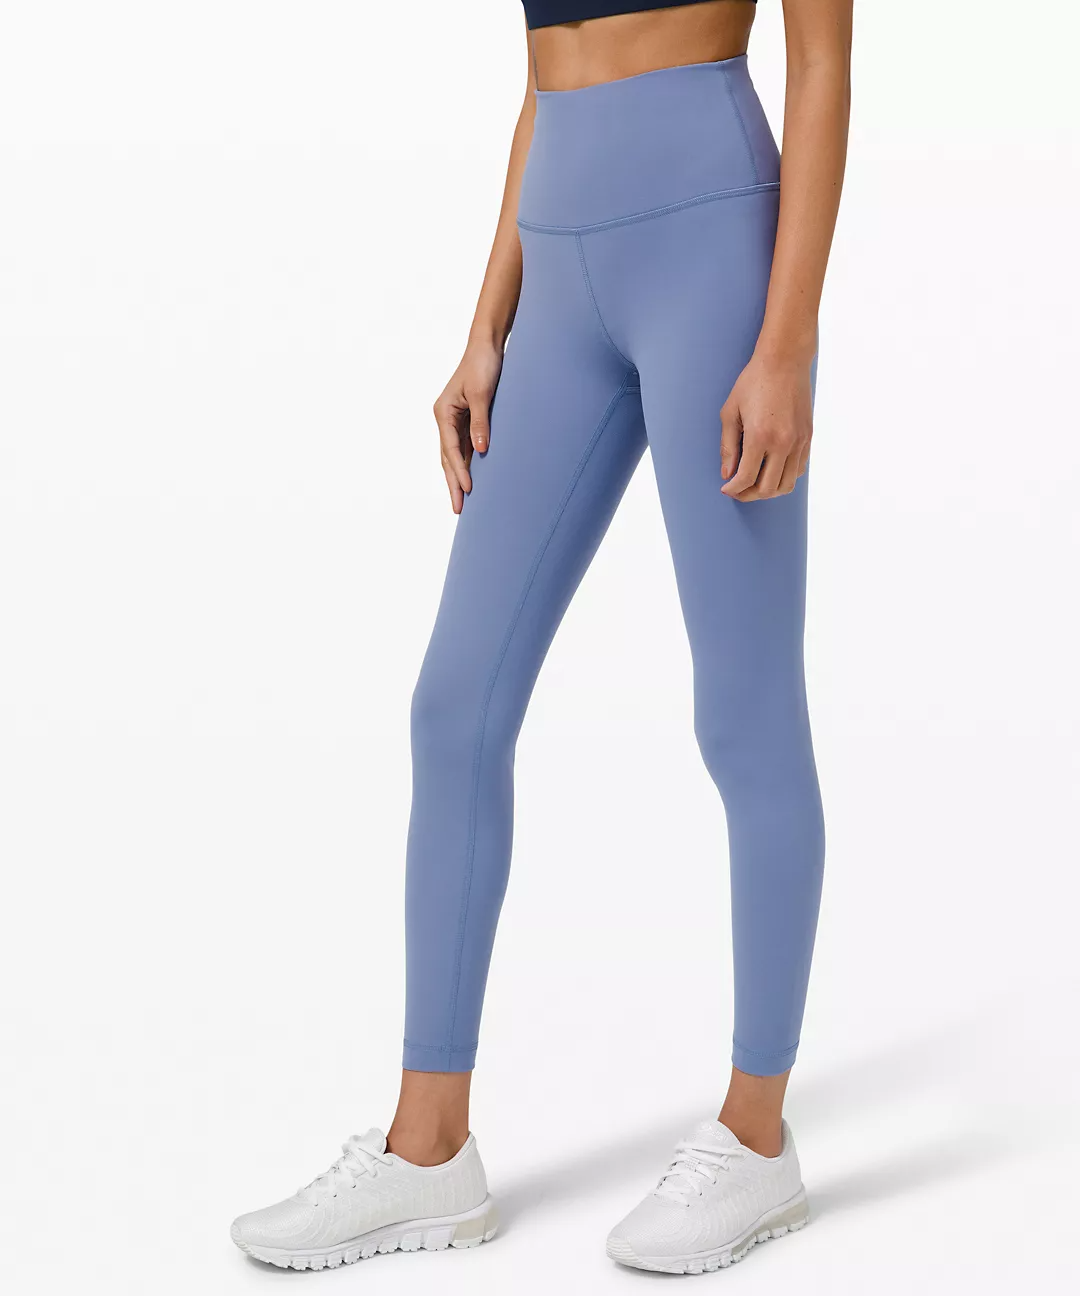 Lululemon Light Blue Align Leggings Size 4 - $45 (54% Off Retail) - From  Kylie